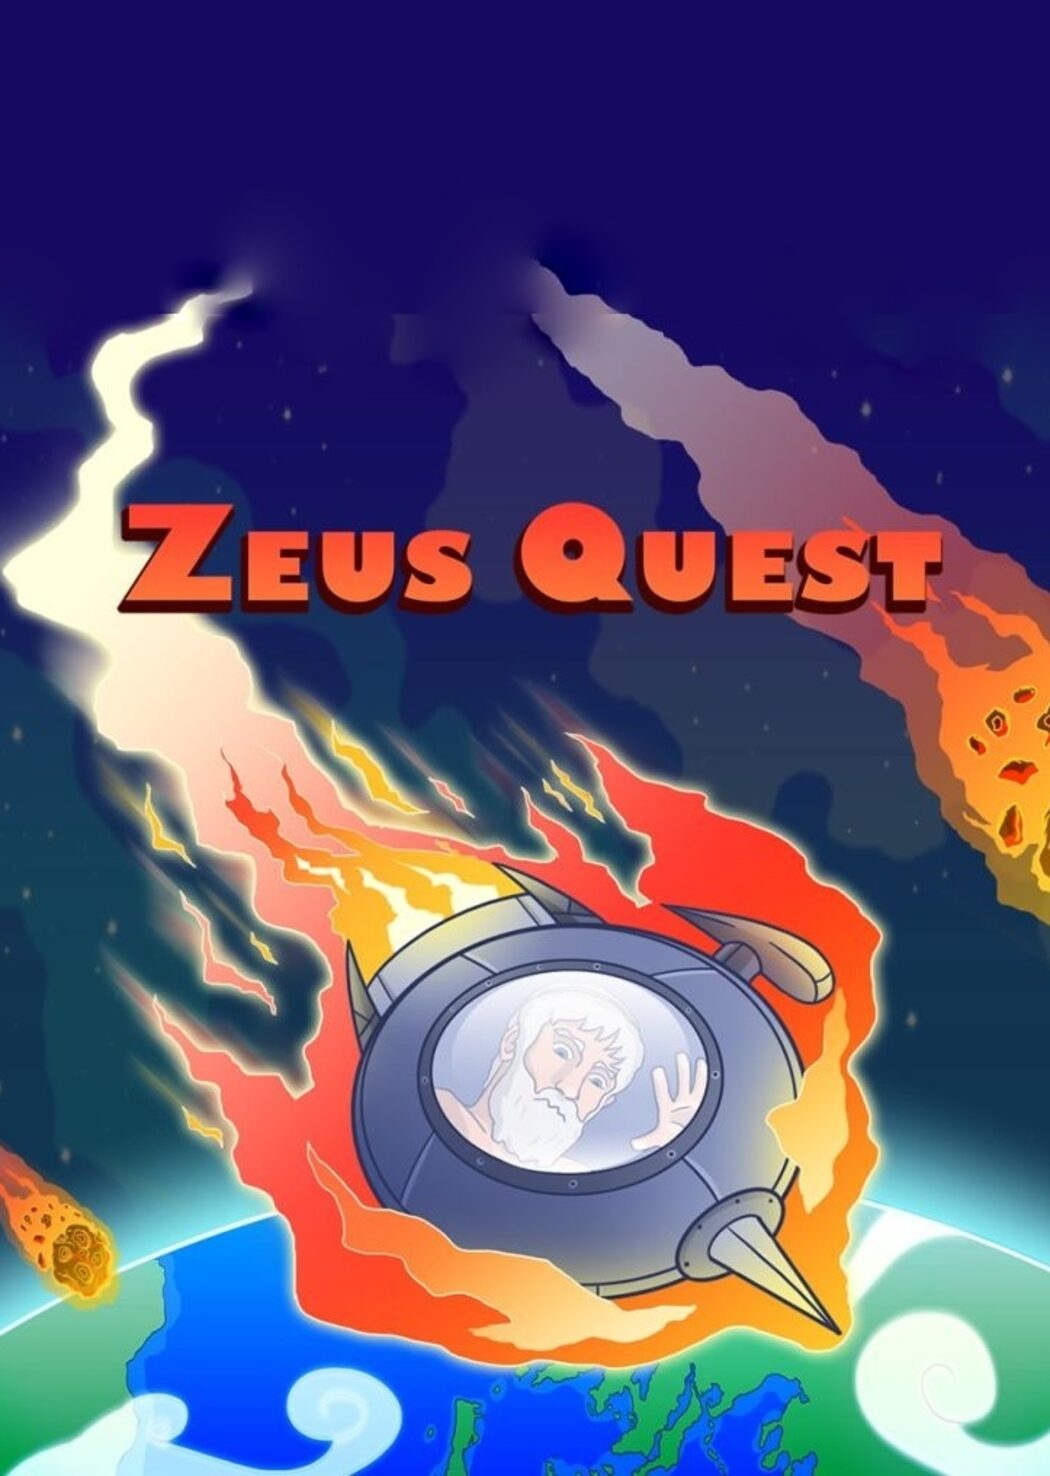 Zeus Quest